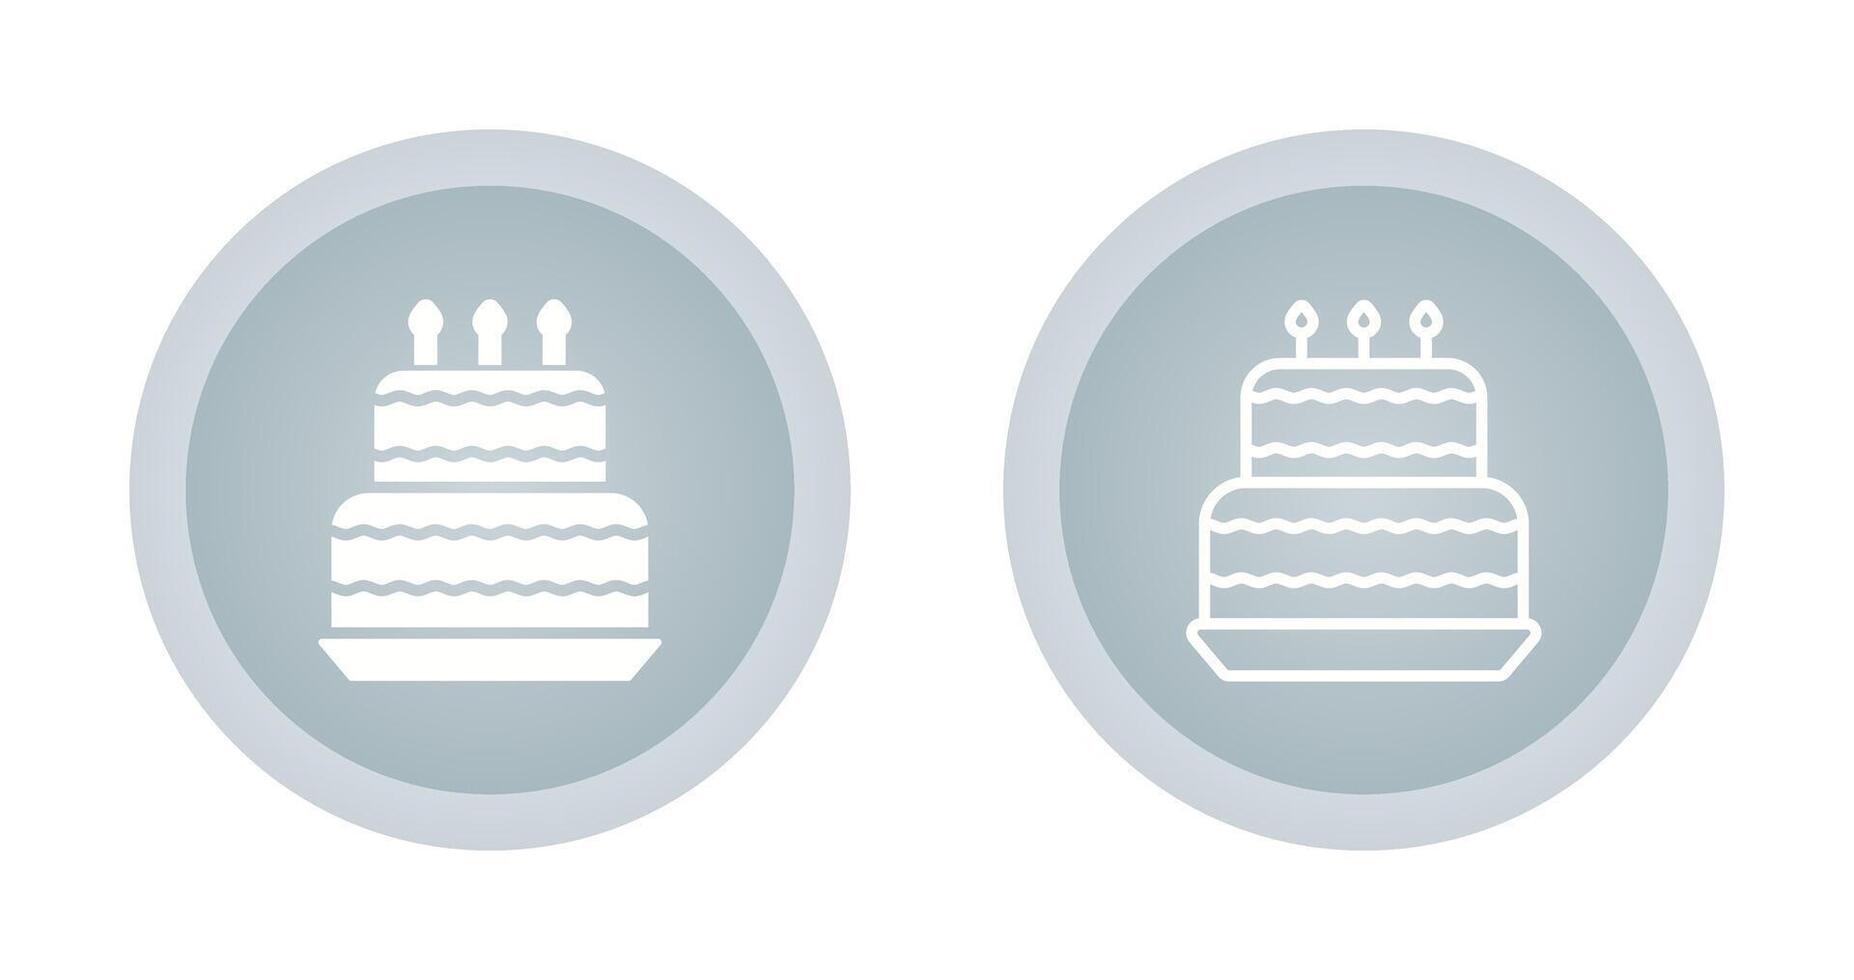 icône de vecteur de gâteau d'anniversaire